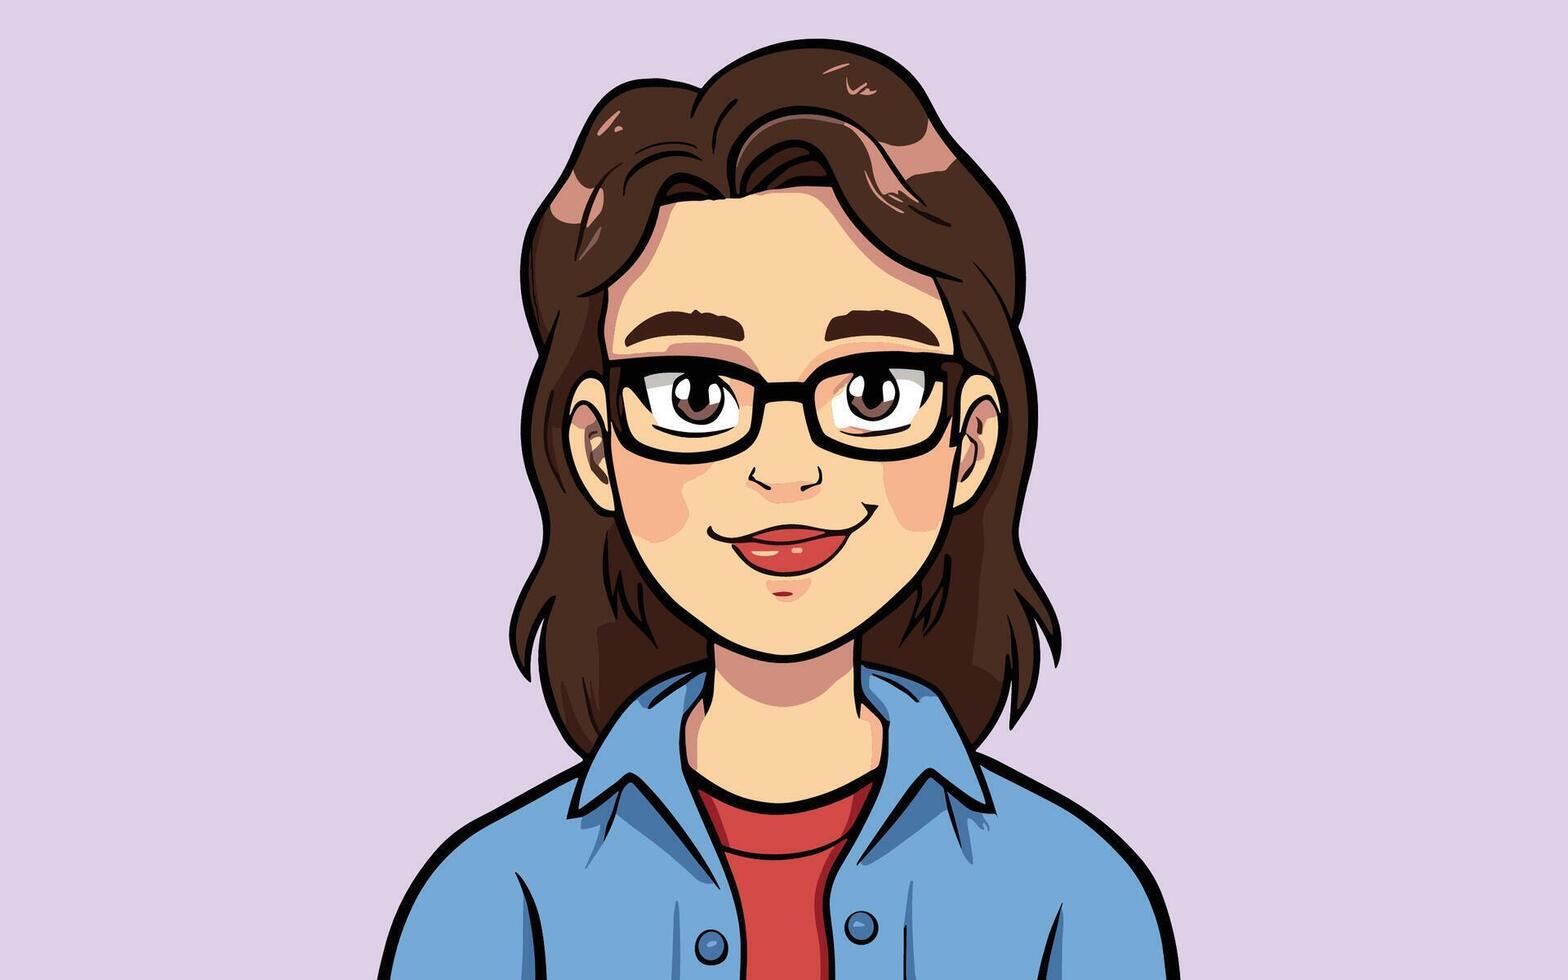 femme avec des lunettes dessin animé style profil avatar image vecteur